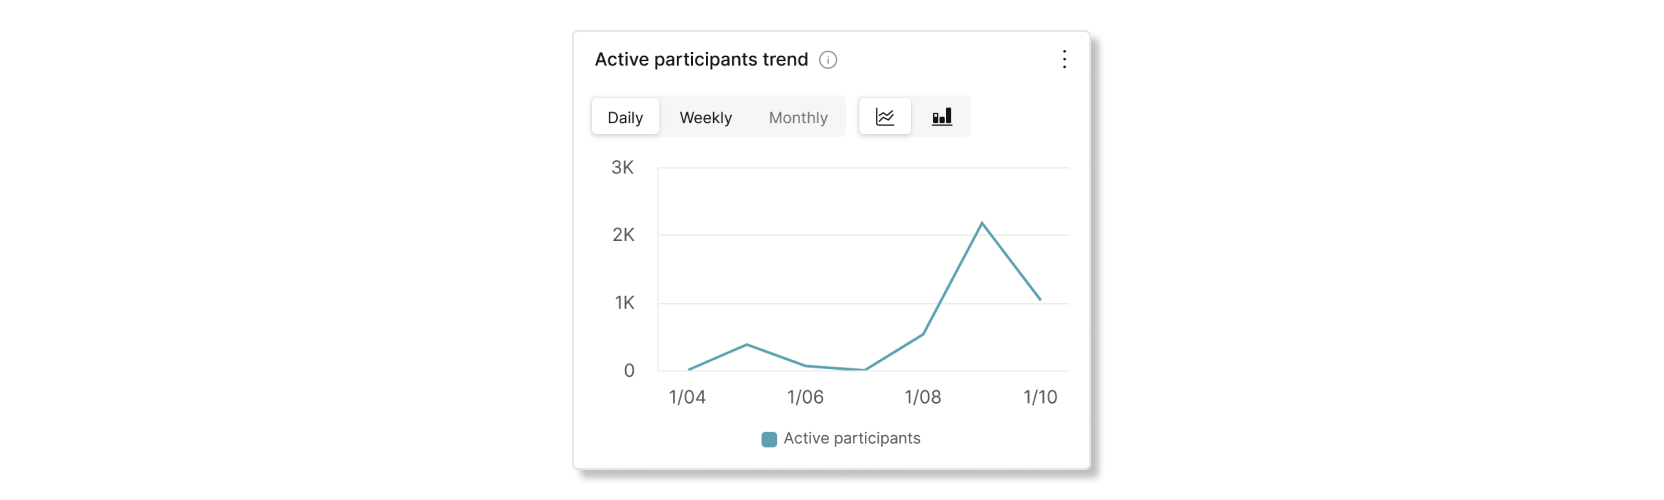 Grafikon trendova aktivnih učesnika u control Hub Slido analitici